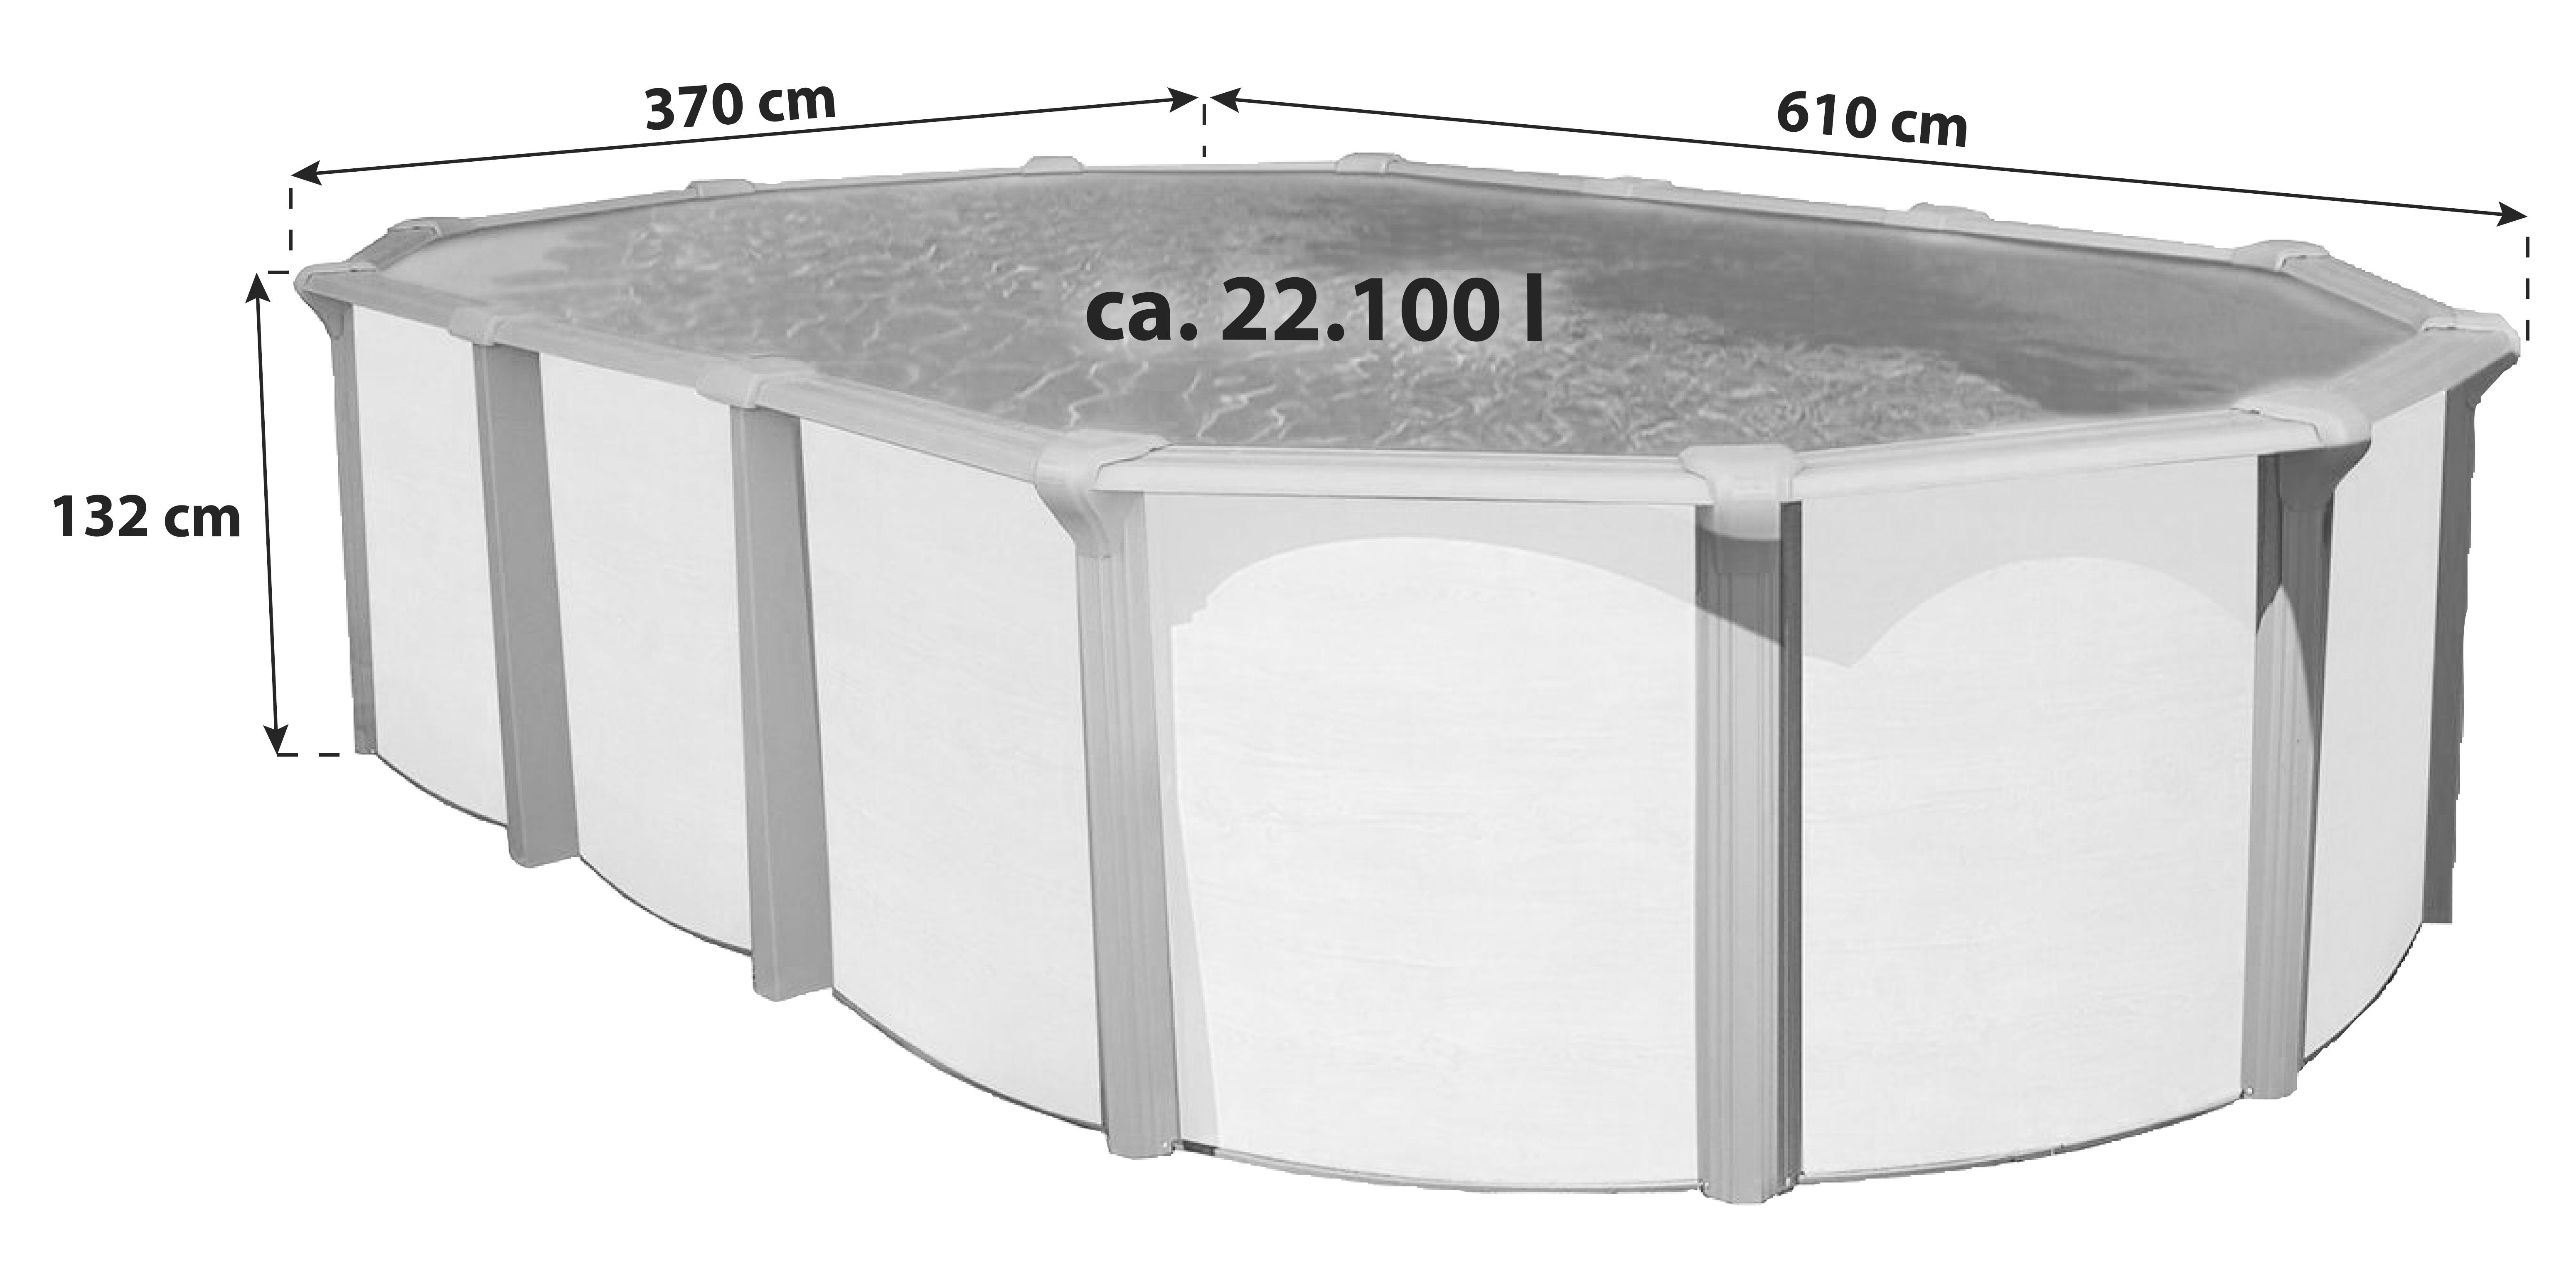 Schwimmbecken Steely De Luxe Supreme - Braun/Weiß, Basics, Kunststoff (610/370/132cm)